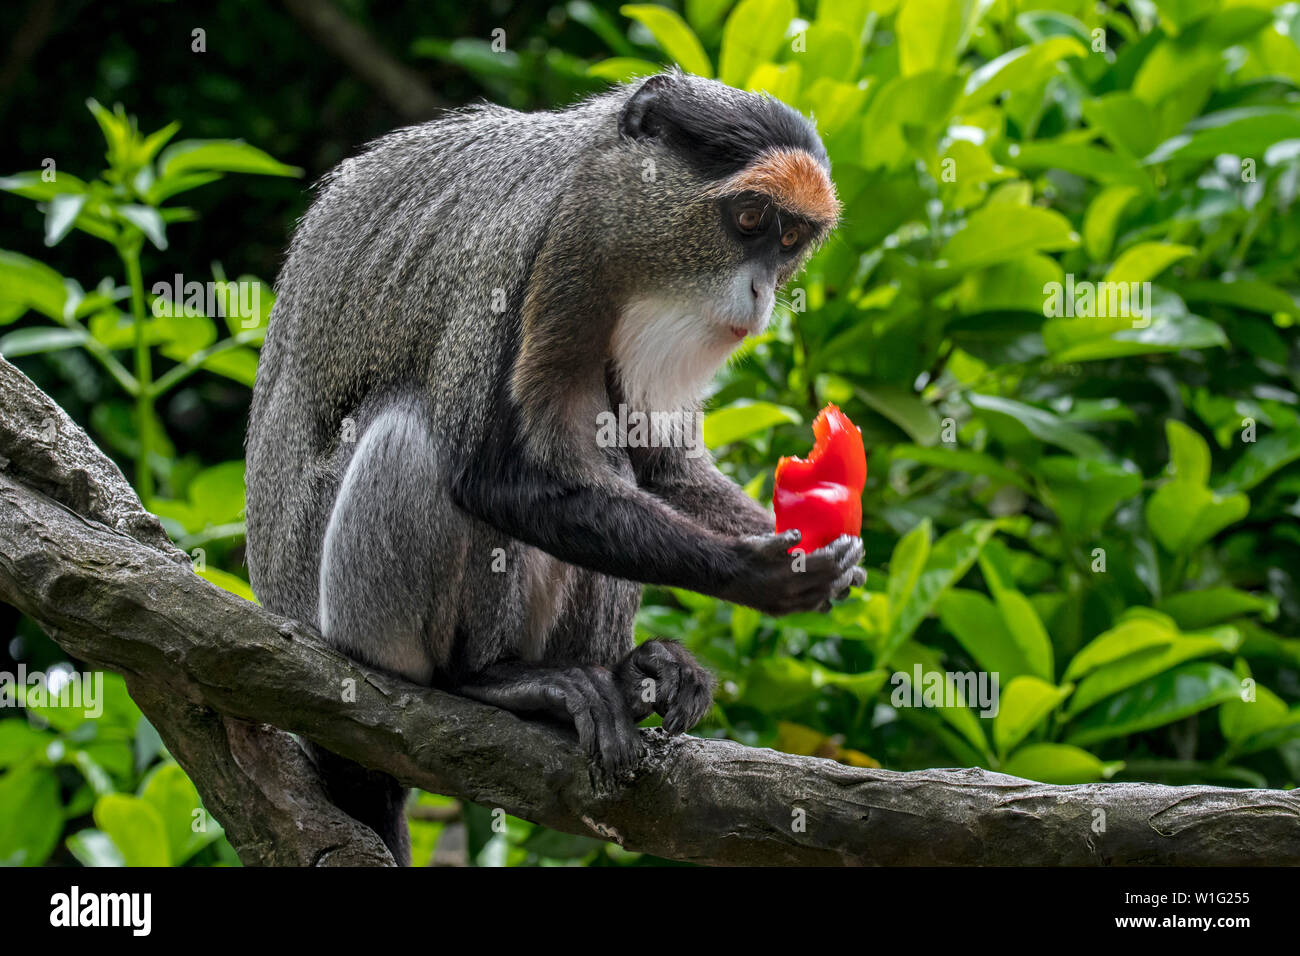 De Brazza (Cercopithecus neglectus monkey's) indigènes de l'Afrique centrale, manger des fruits dans l'arbre Banque D'Images